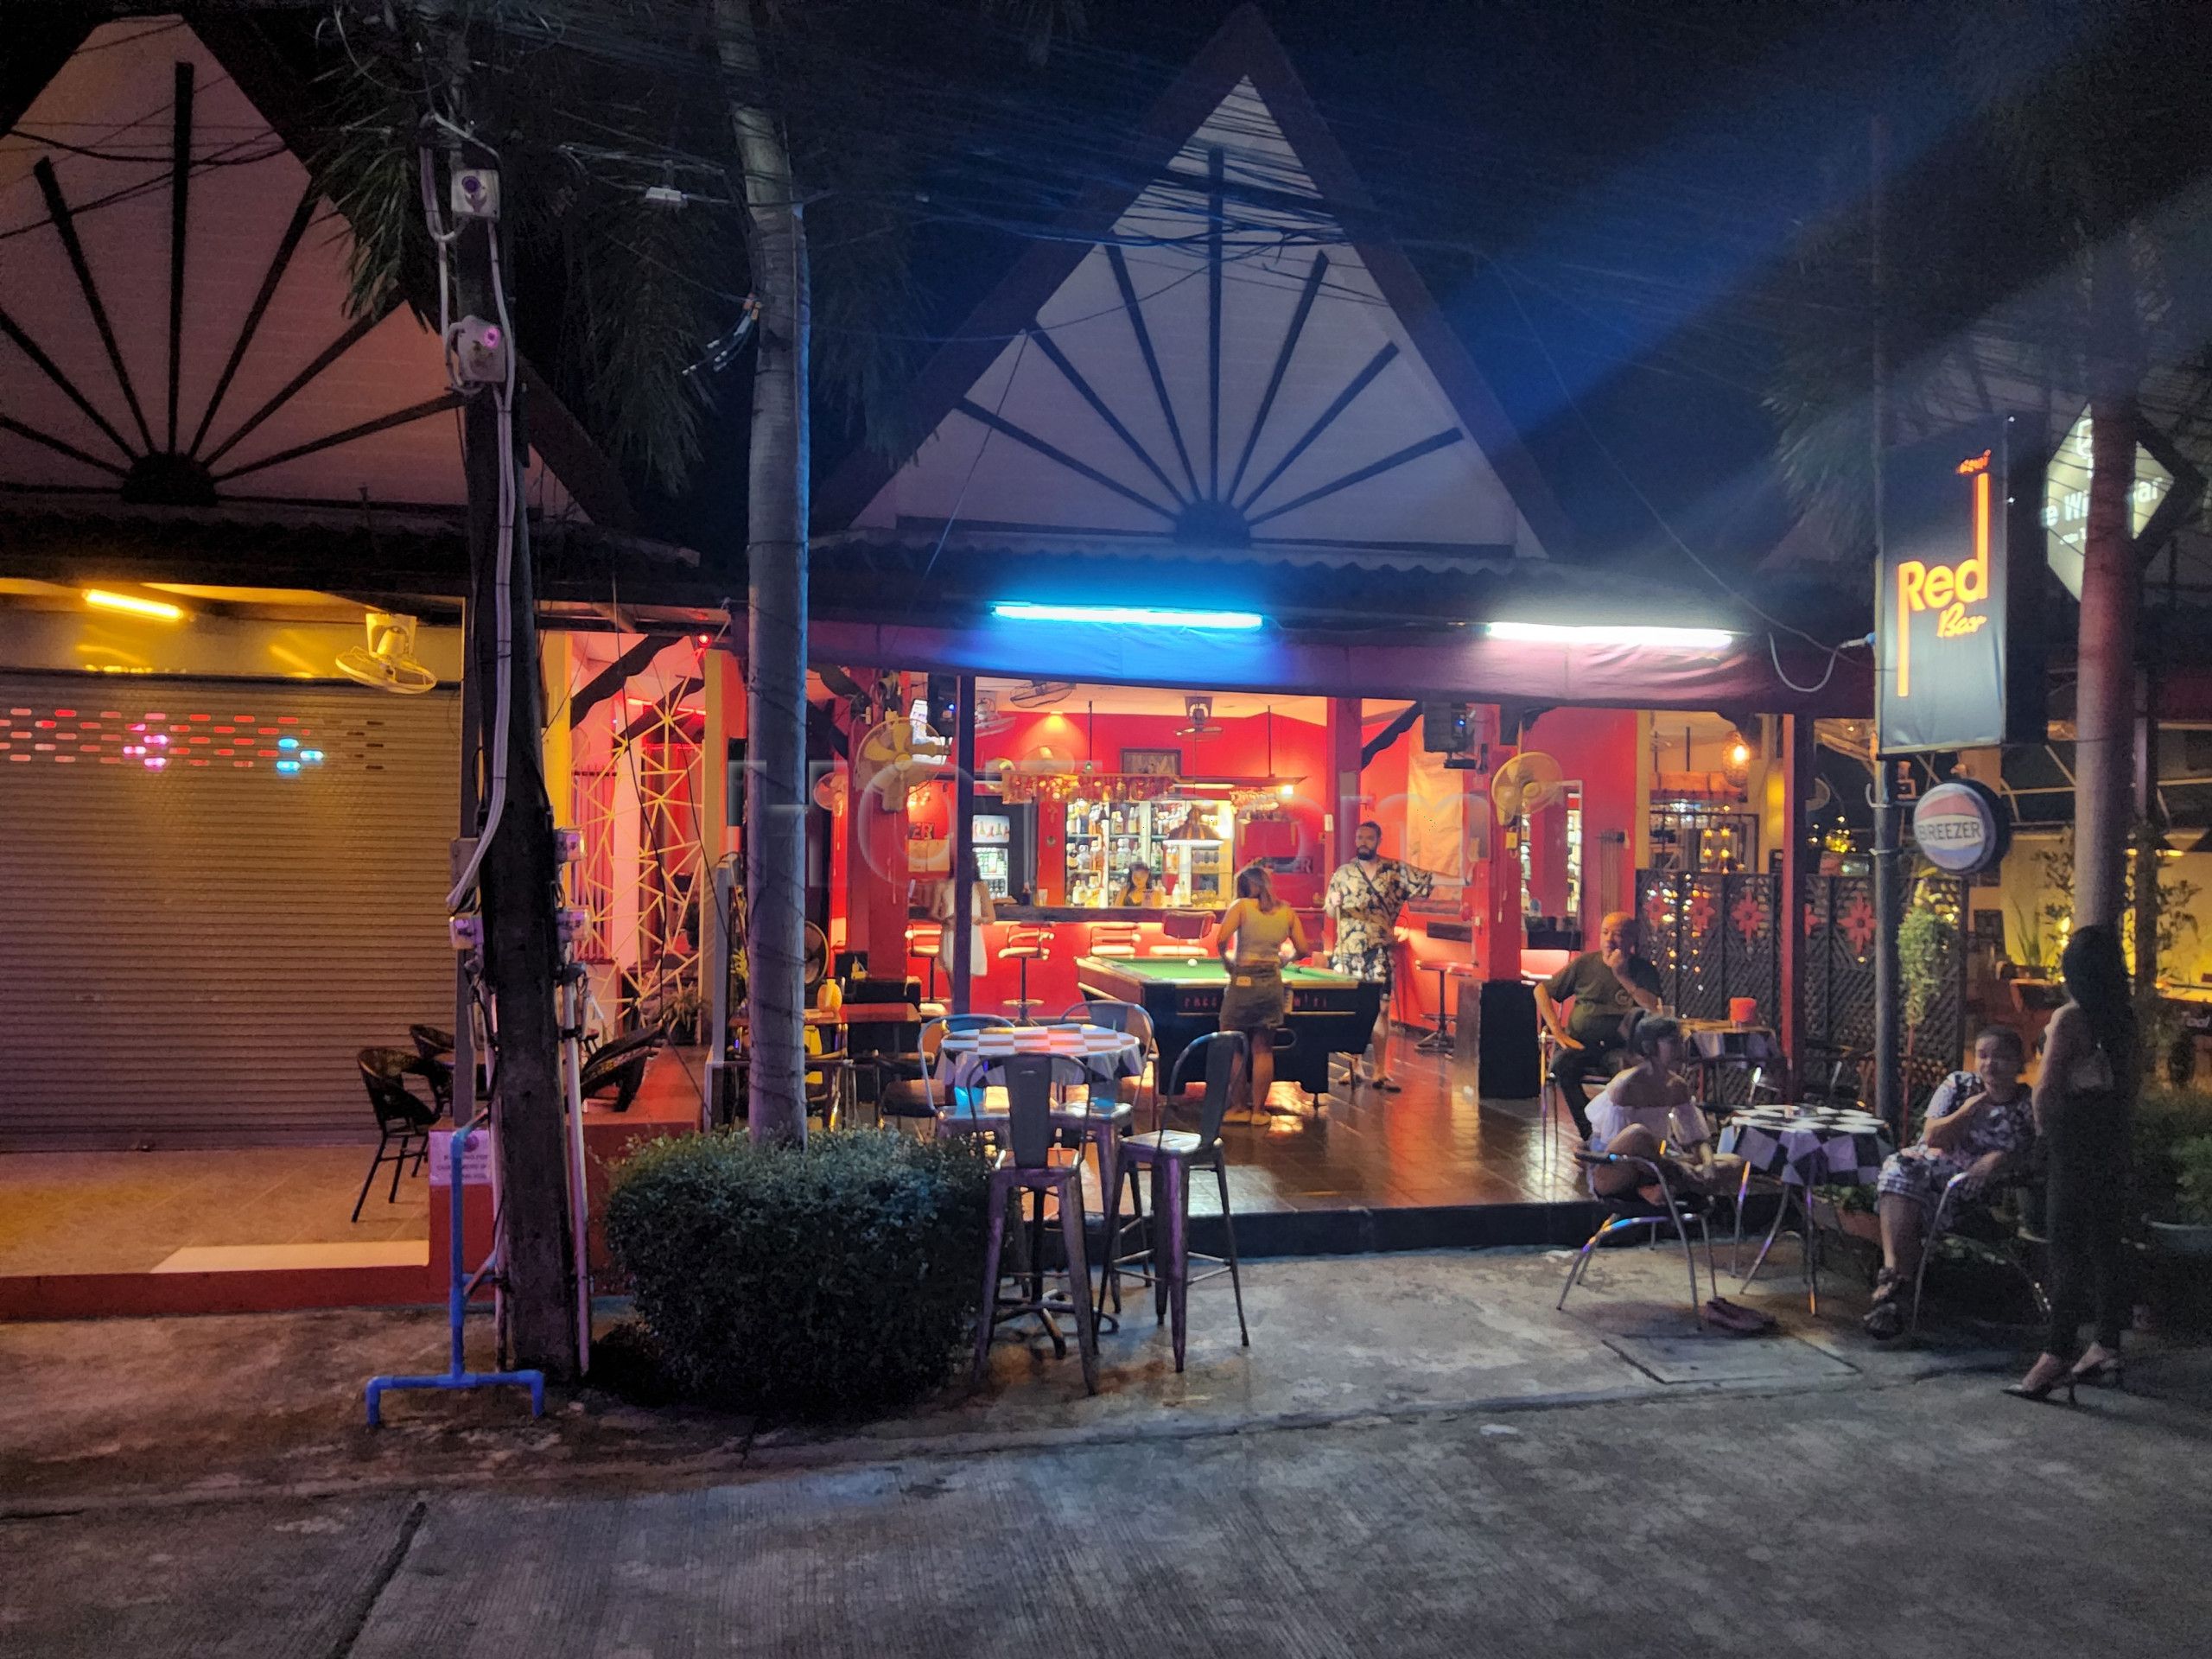 Ko Samui, Thailand Red Bar